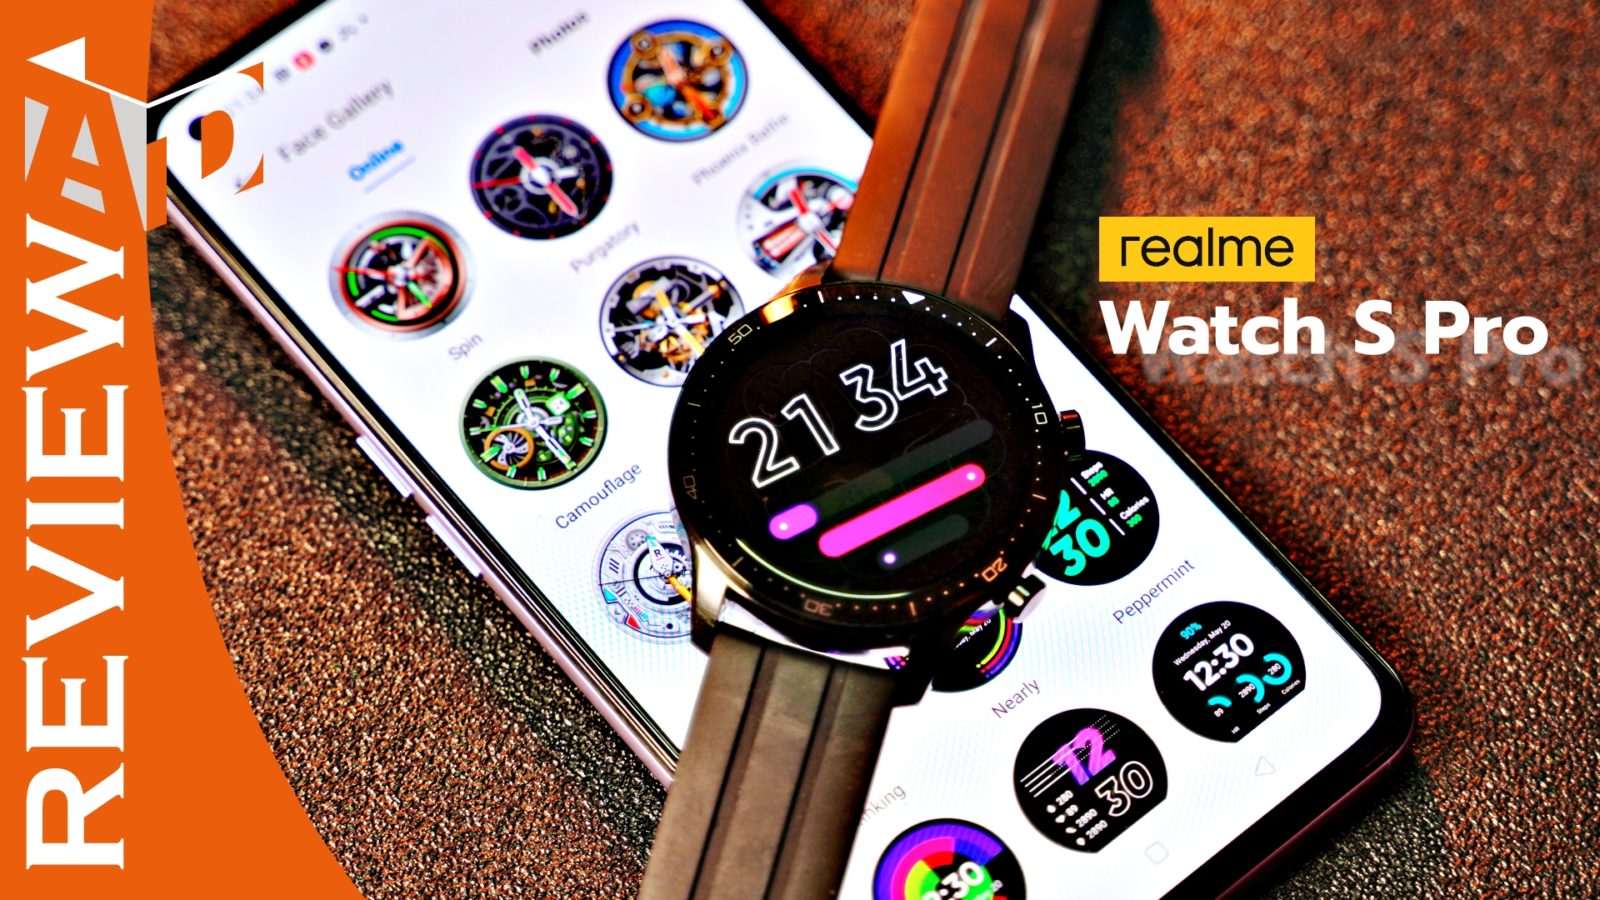 realme watch S Pro reivew | Realme | รีวิว realme Watch S Pro สมาร์ทวอทช์อัจฉริยะ สวยมาก เซนเซอร์ระดับโปร แต่มาในราคาไม่ถึงห้าพัน